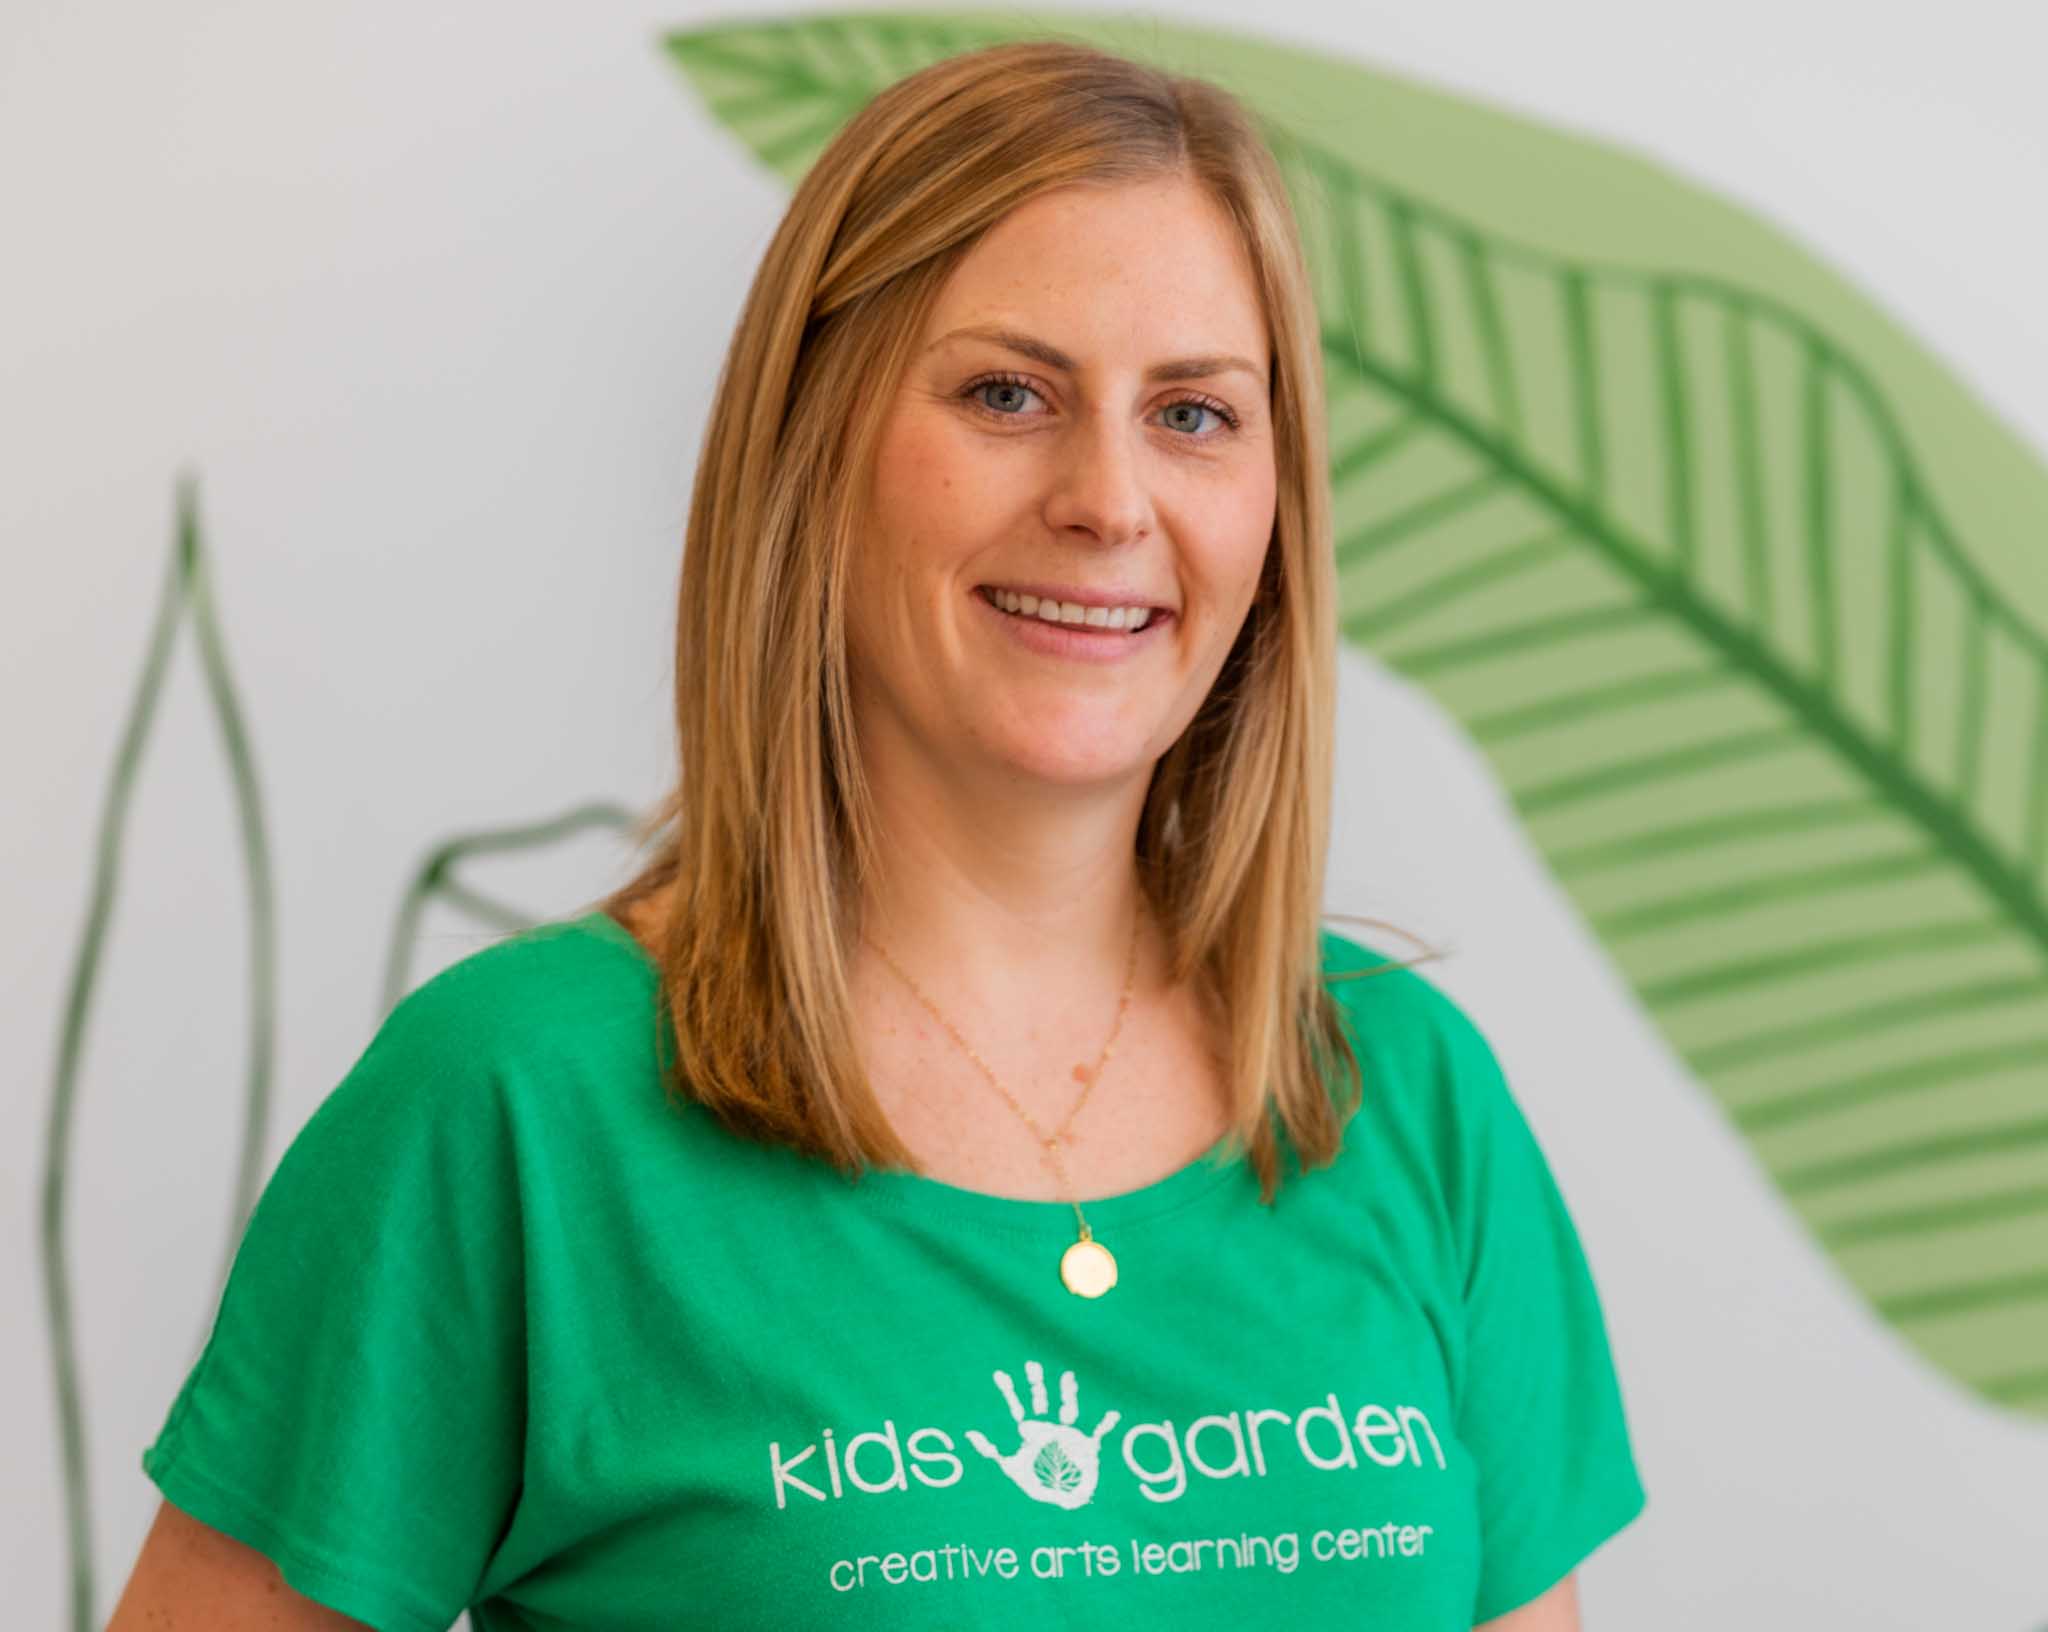 Carol Peckham - Director at Kids Garden Charleston